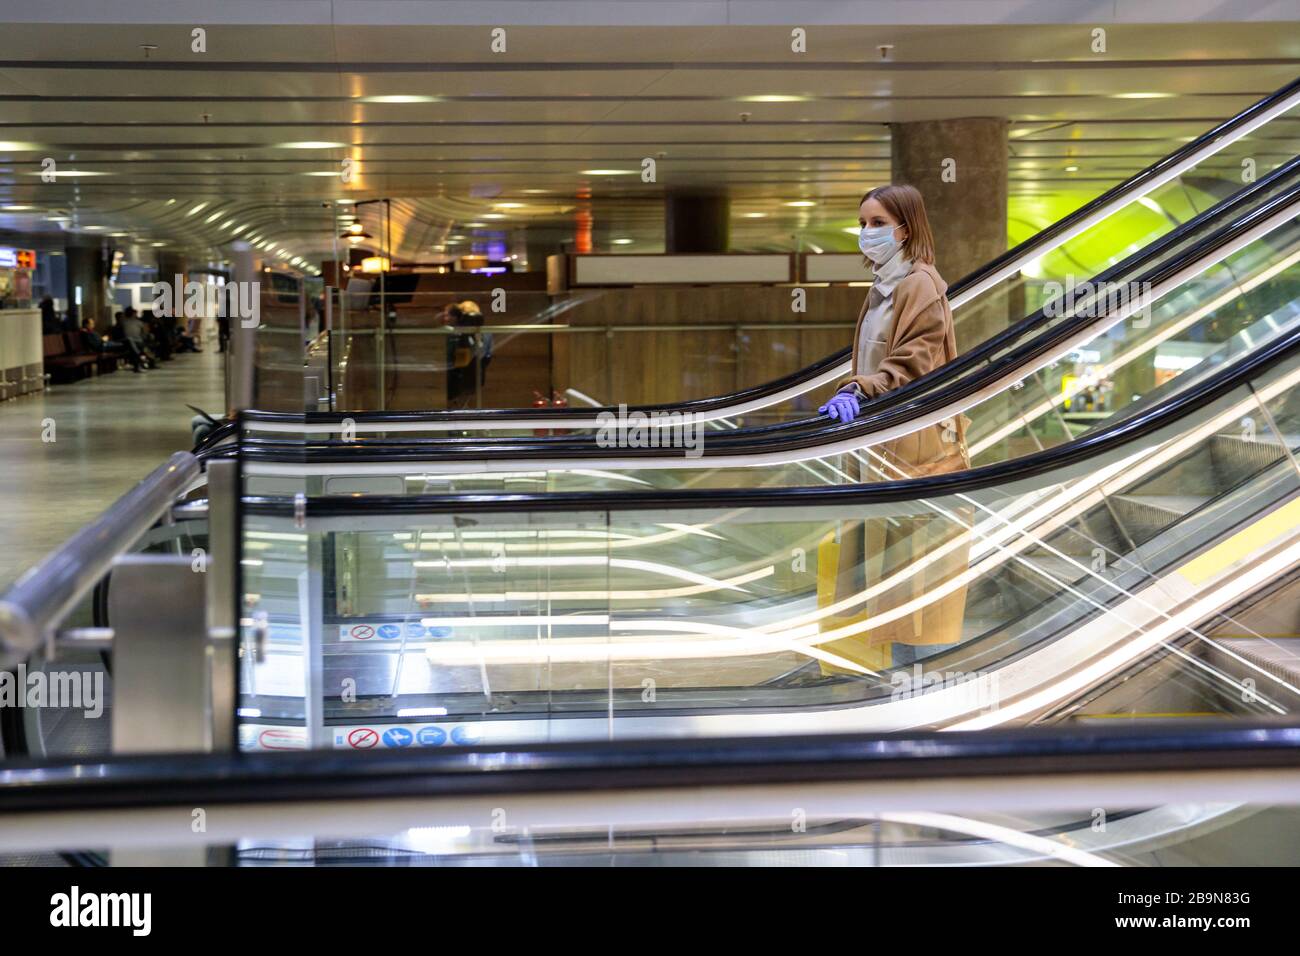 Frau mit gelbem Gepäck steht auf Rolltreppe, hält Rolltreppen-Handlauf im Flughafenterminal durch Latexhandschuhe, um sich vor Kontakt mit w zu schützen Stockfoto